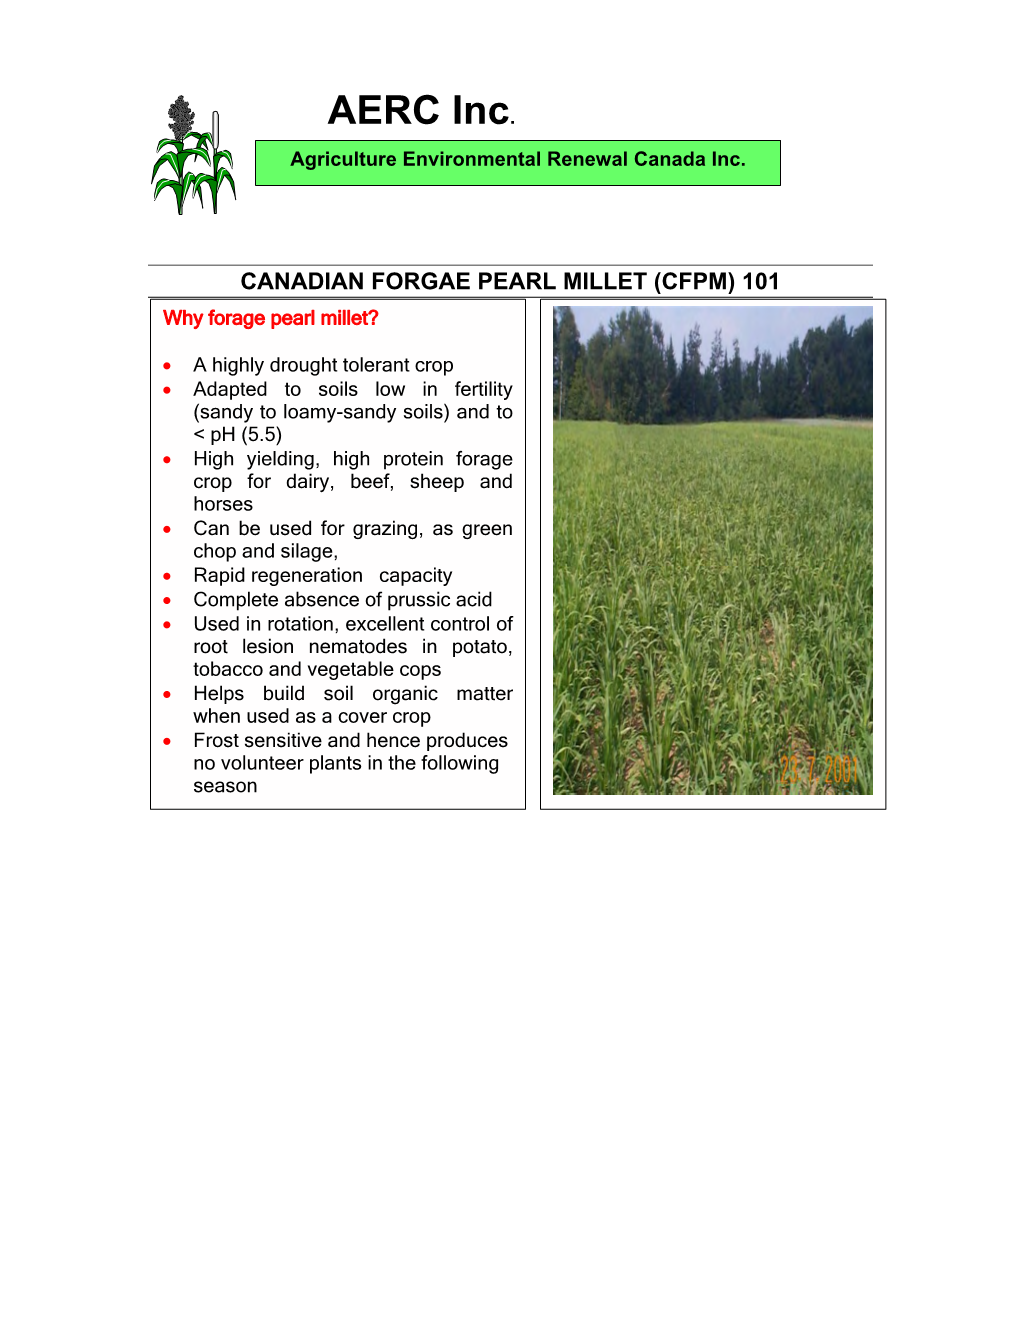 Forage Pearl Millet CFPM 101 Crop Management